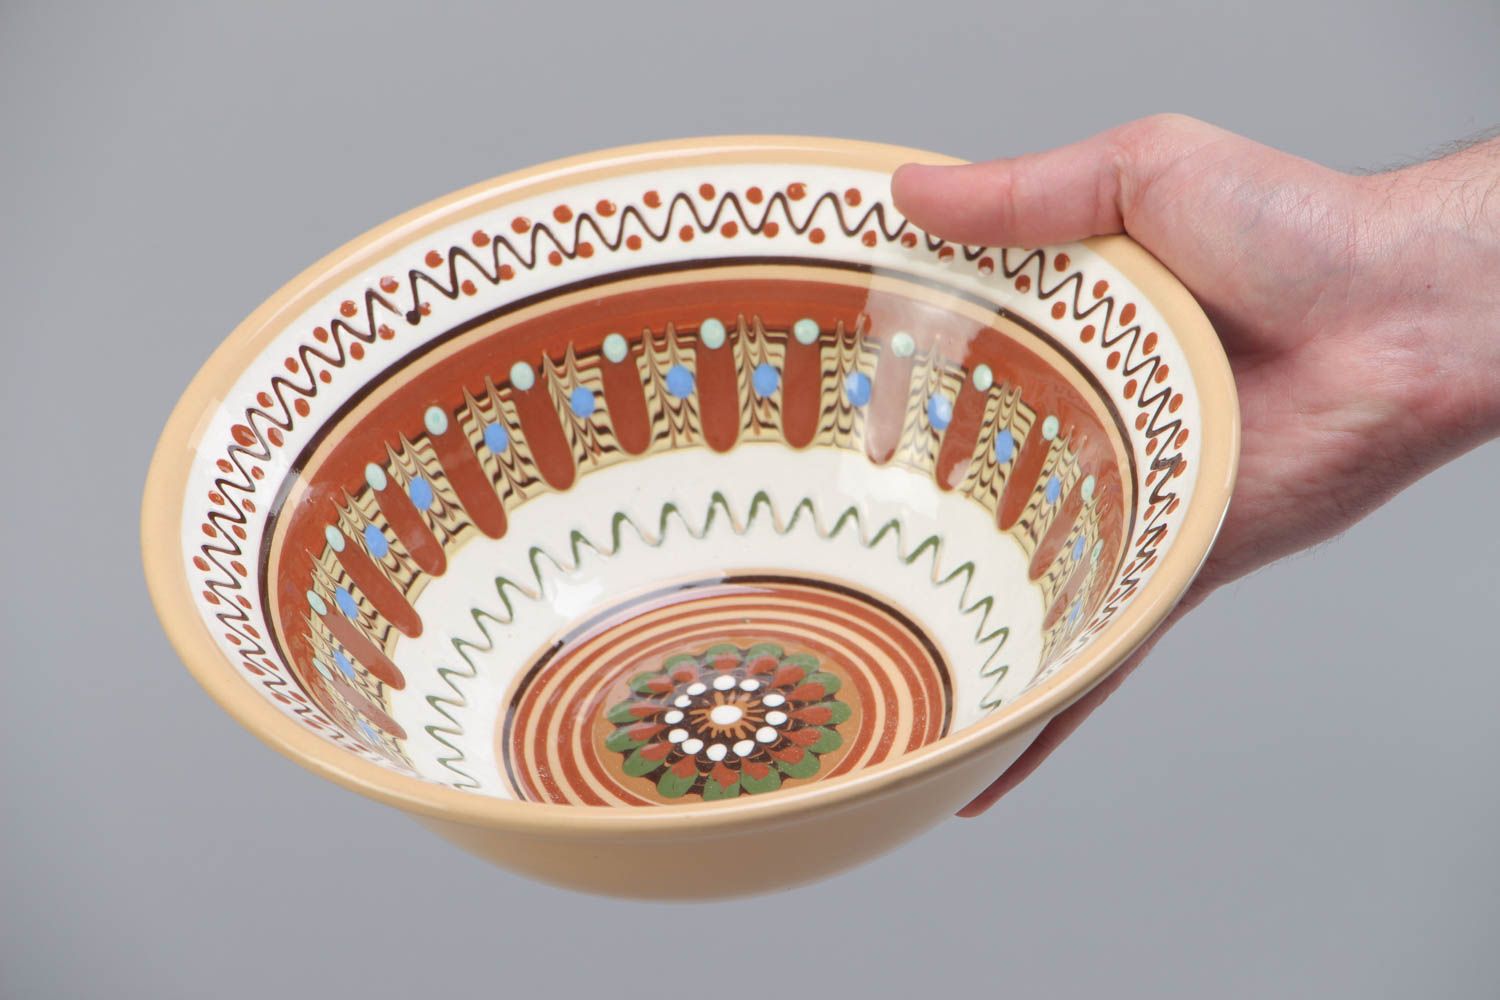 Bol de céramique vaisselle peinte de glaçure faite main ethnique 1,3 litre photo 5